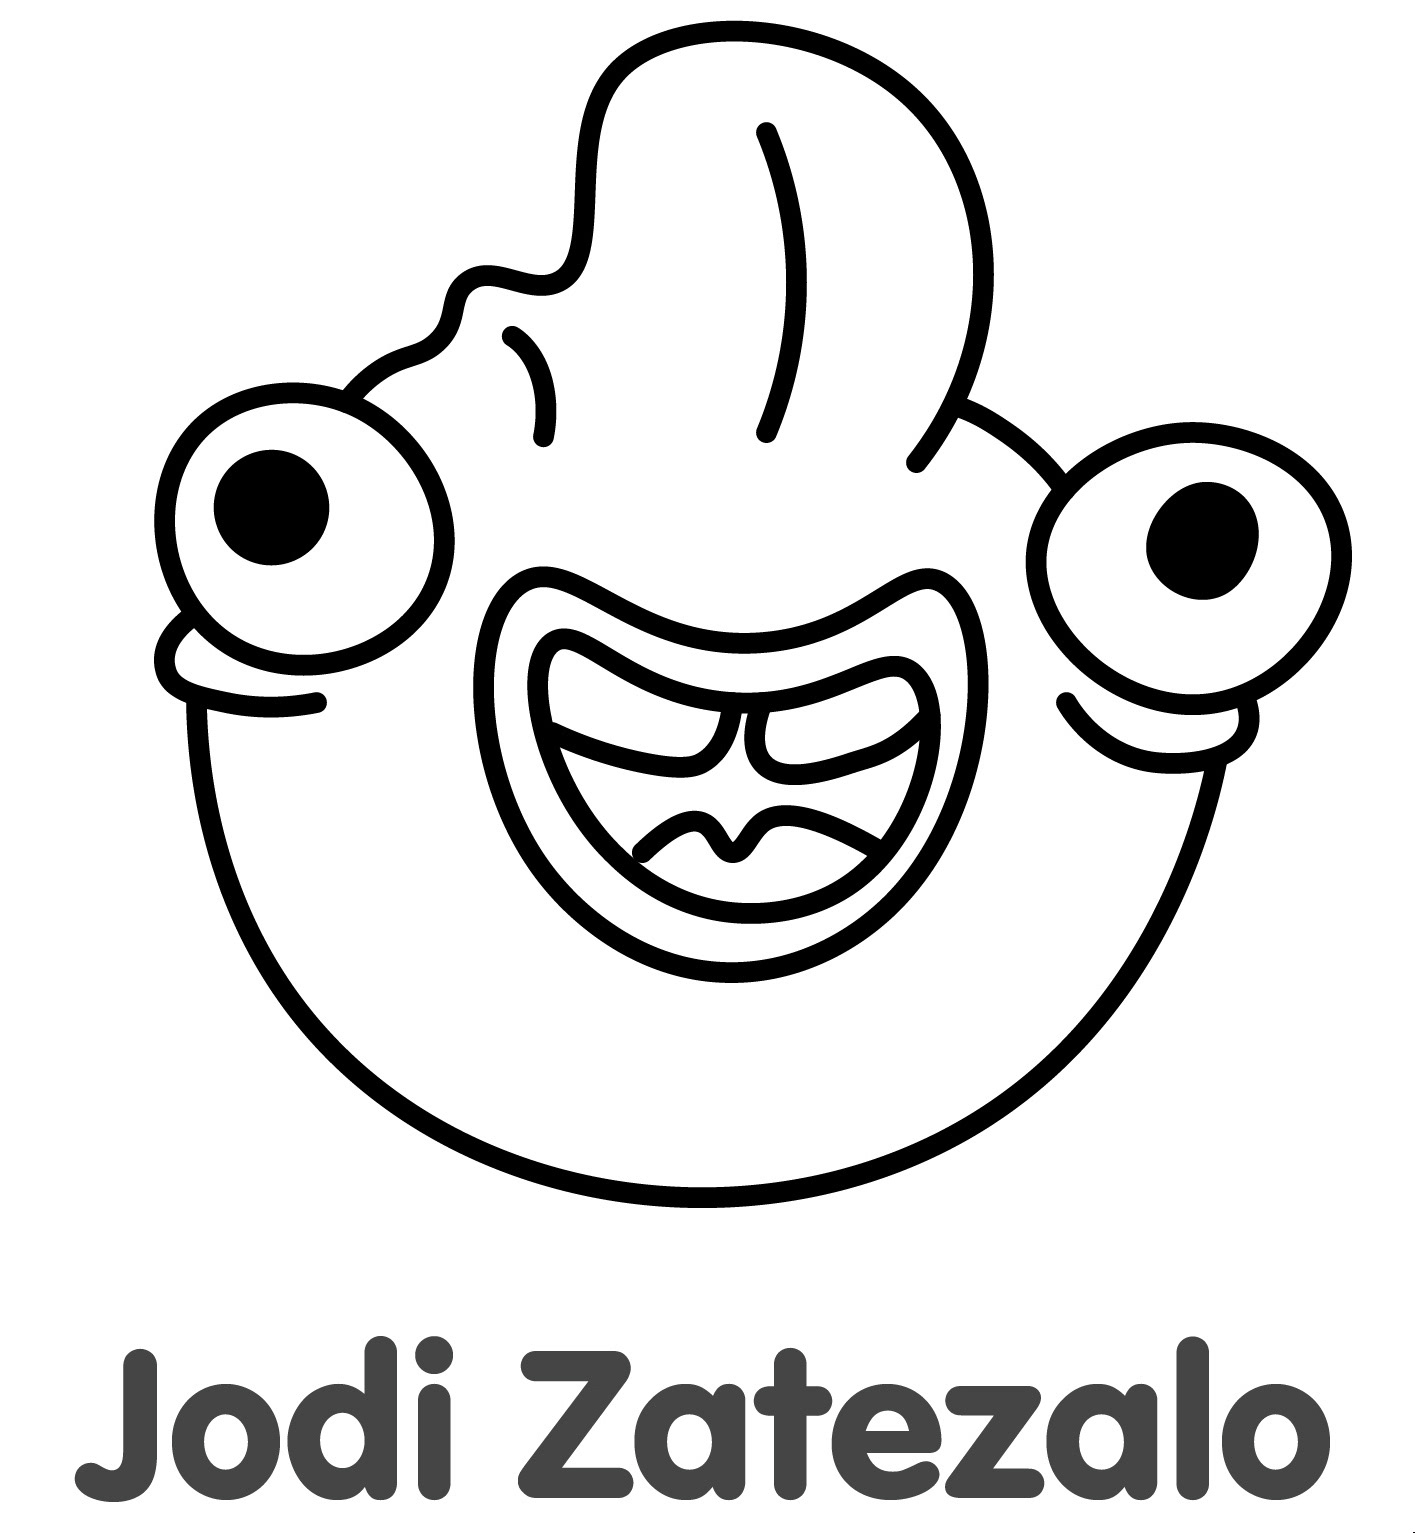 Jodi Zatezalo